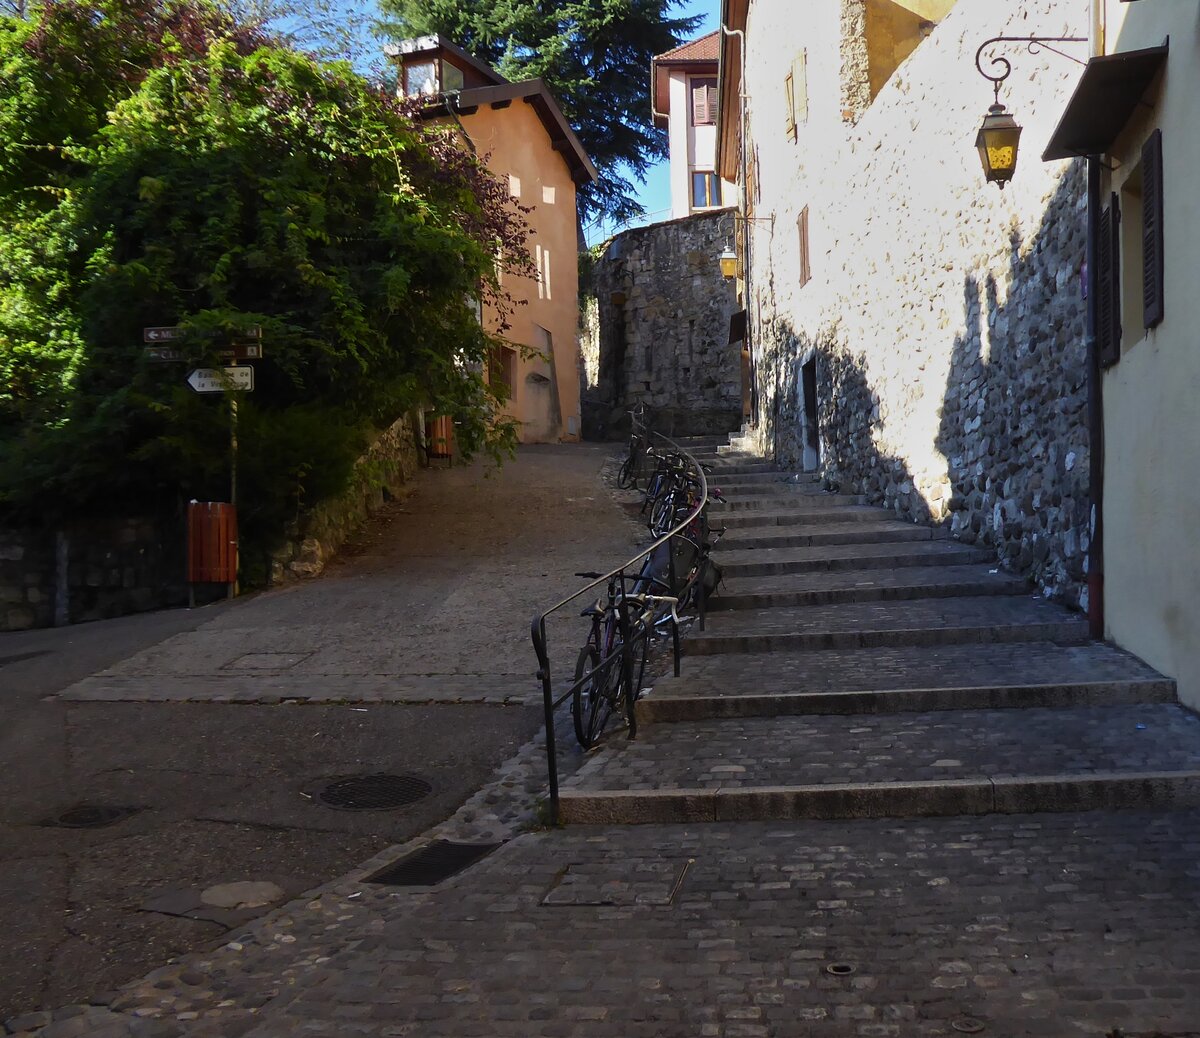 Wo dieser steile Weg wohl hinführt?, gesehen bei einem Spaziergang durch die Altstadt von Annecy. 09.2022